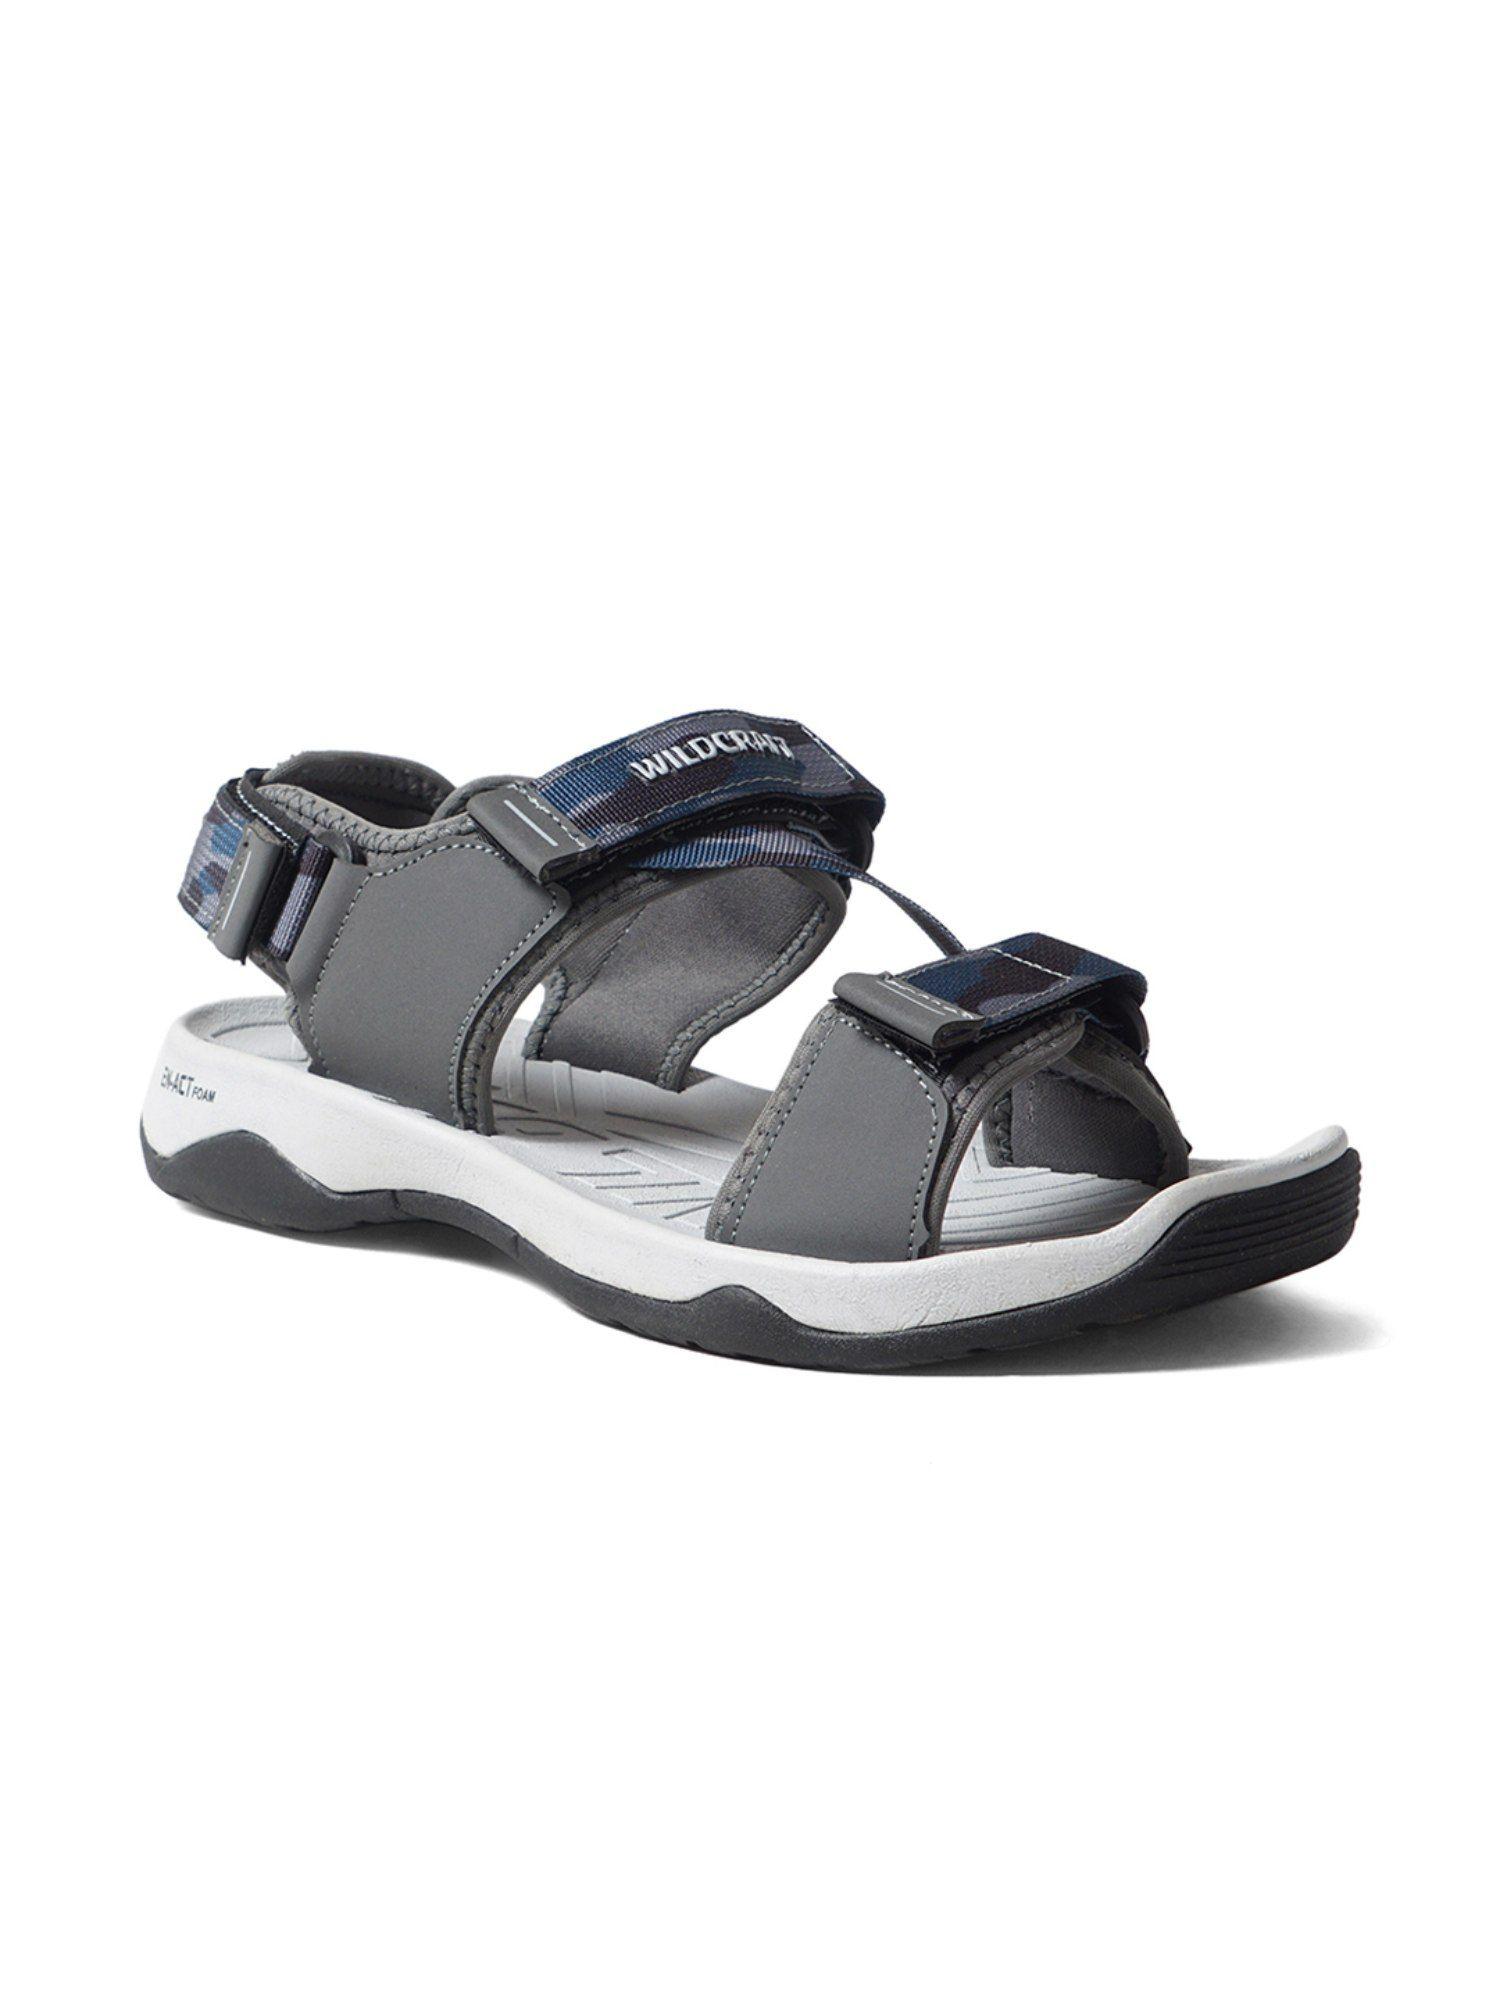 men swish grey floater sandals